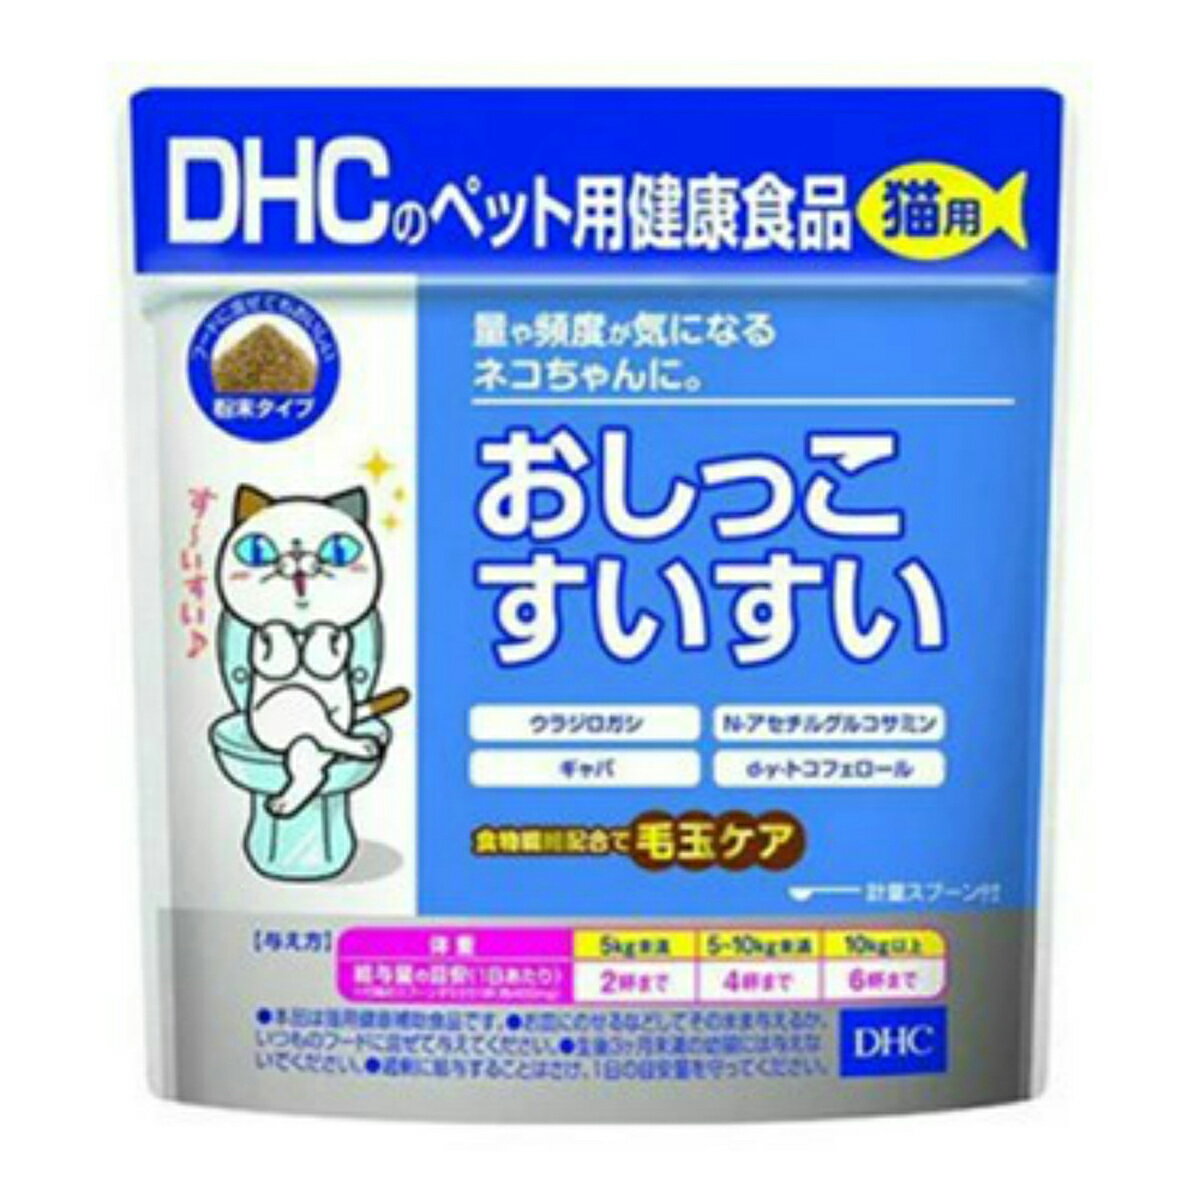 【配送おまかせ送料込】DHC ペット用健康食品 猫用 おしっこすいすい 粉末タイプ 50g